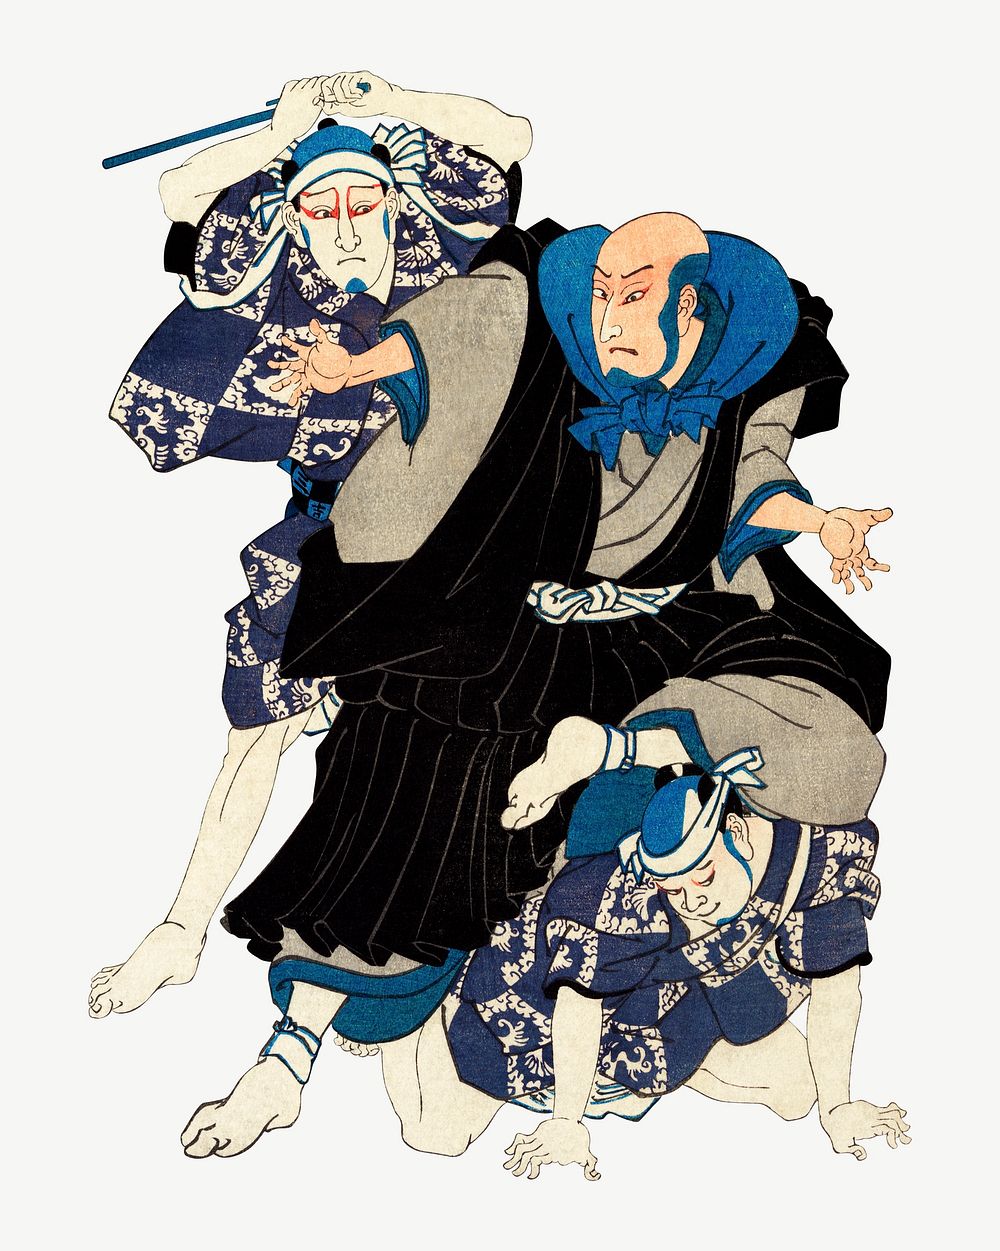 Sato Norikiyo Nyudo Saigo Yoshinaka psd, Japanese ukiyo-e woodblock print by Utagawa Kuniyoshi. Remixed by rawpixel.